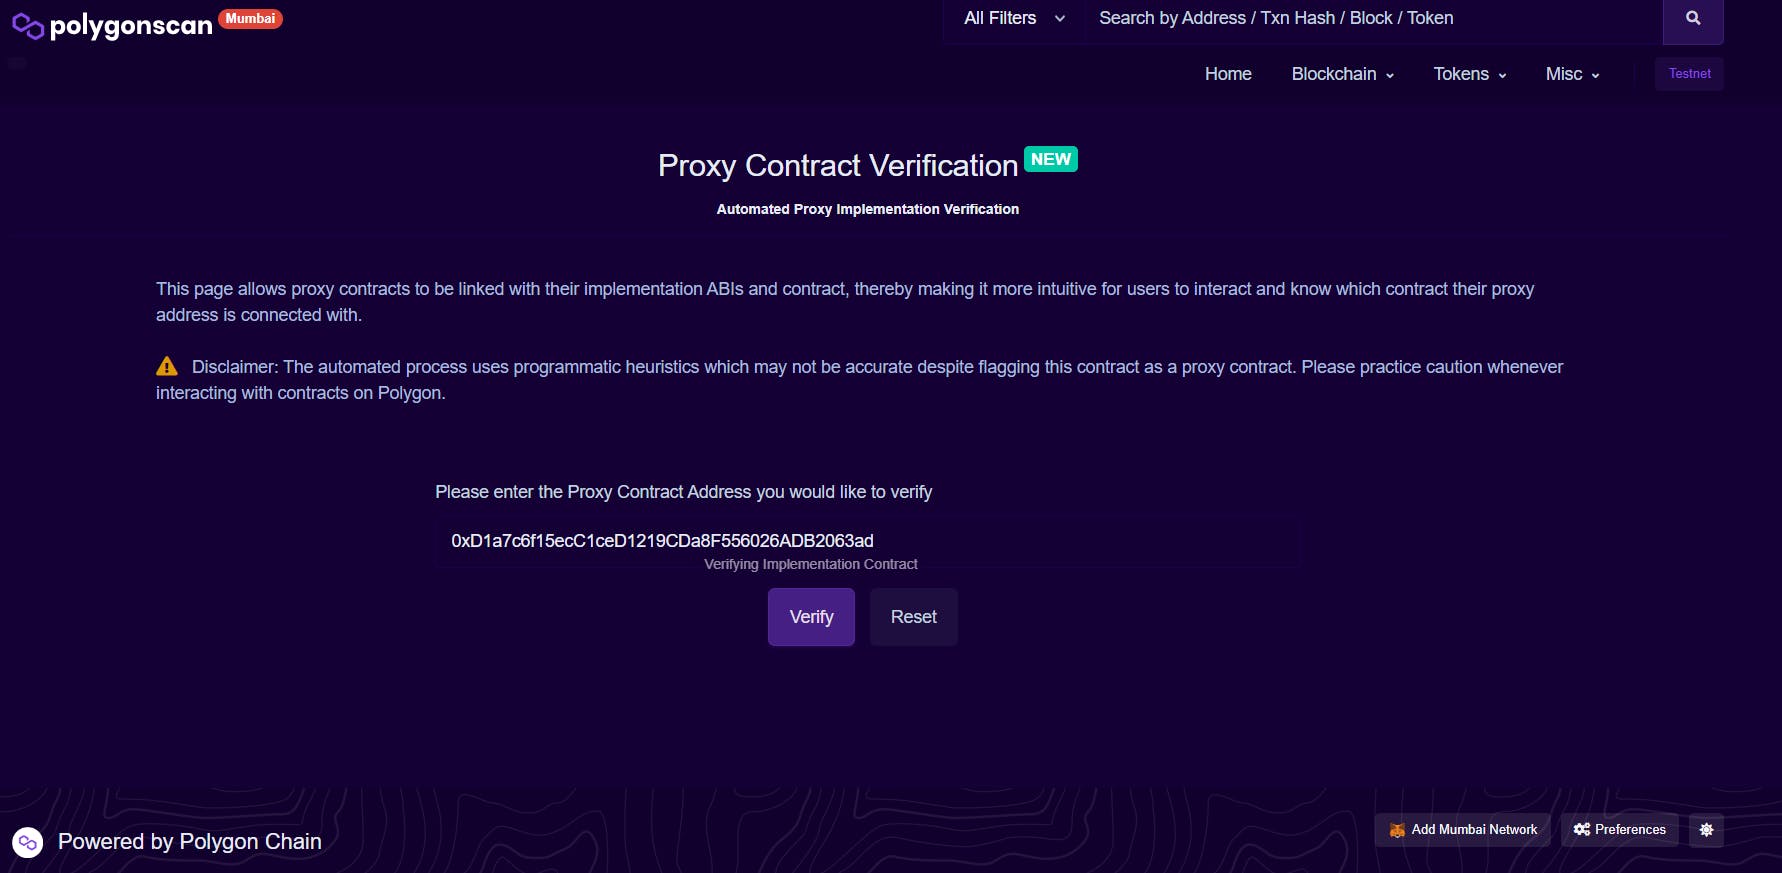 Proxy Contract Verification